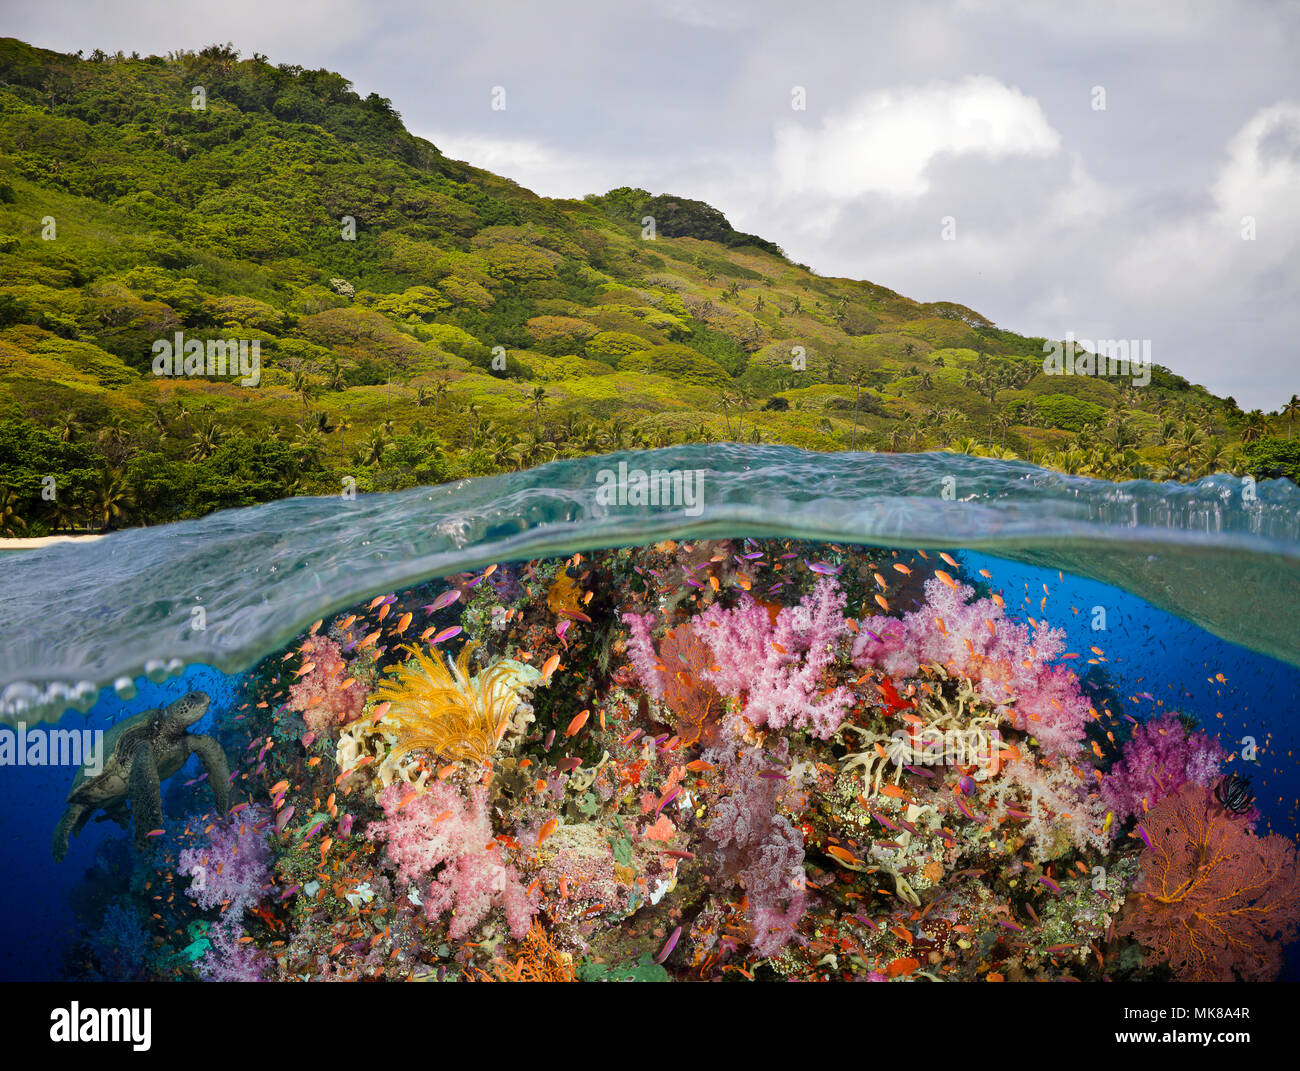 Eine Hälfte über Hälfte unten Blick auf Fidschi Riff mit Alconarian und Gorgonien Korallen und eine grüne Meeresschildkröte, Fidschi-Inseln. Stockfoto